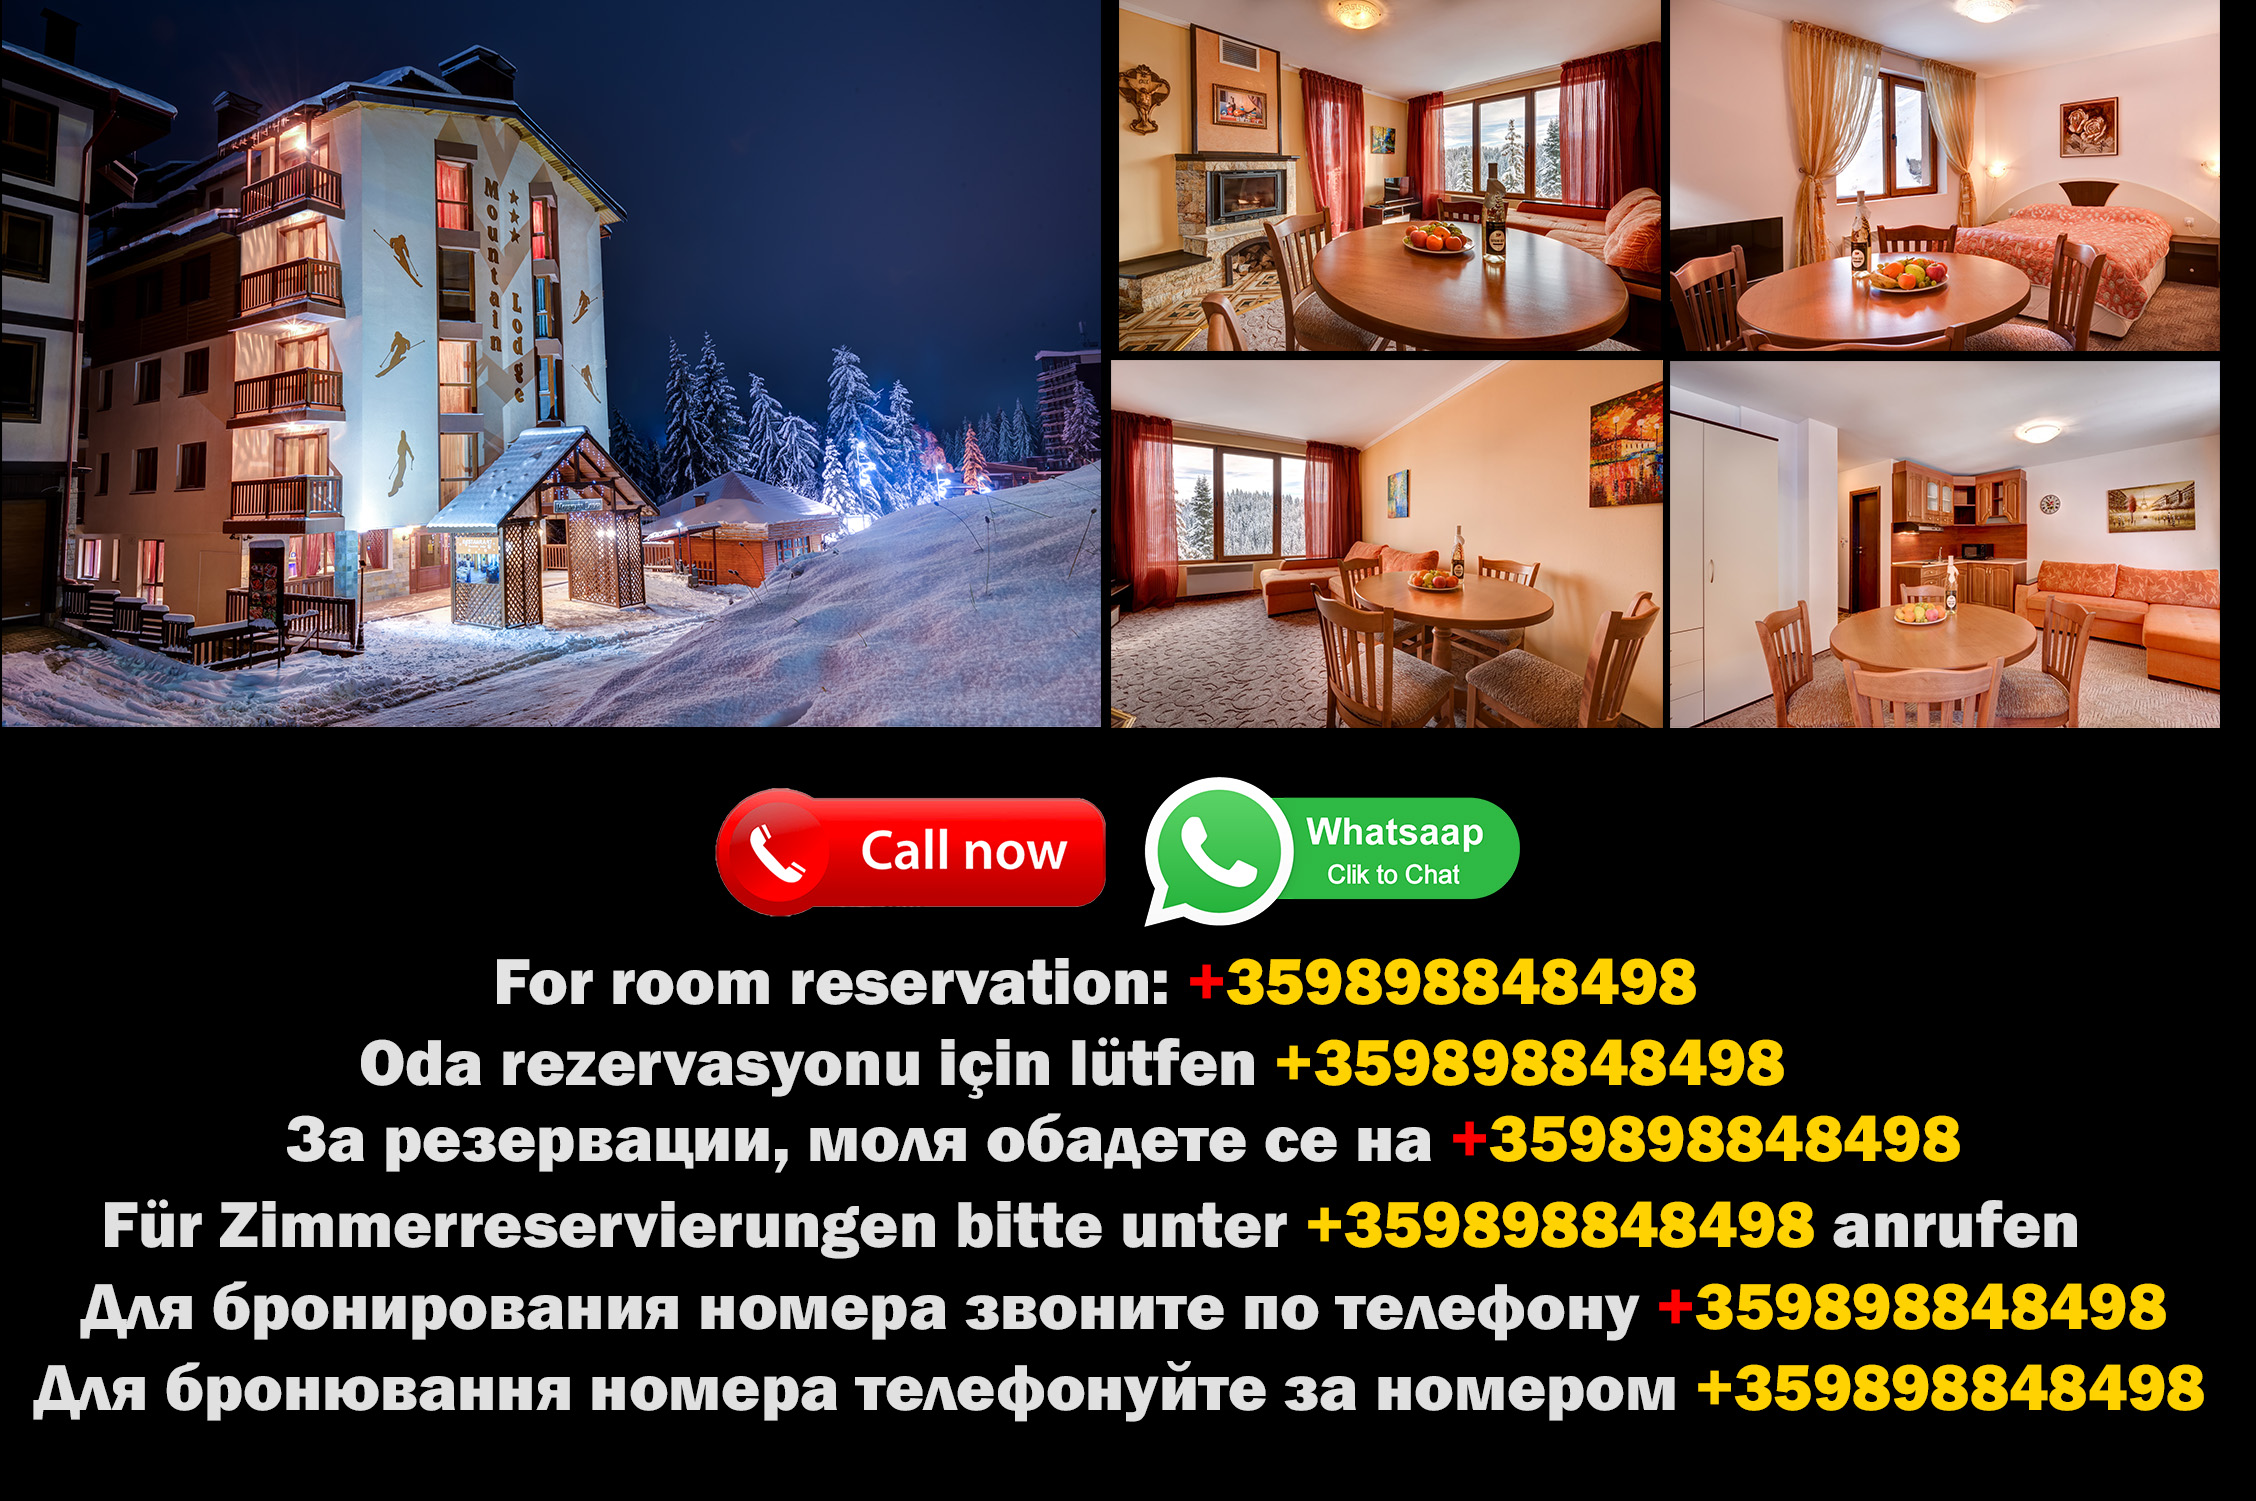 Découvrez l'excellence montagnarde : Réservations directes avec les propriétaires officiels du Mountain Lodge Hotel Pamporovo - Votre retraite dans la station de ski bulgare.